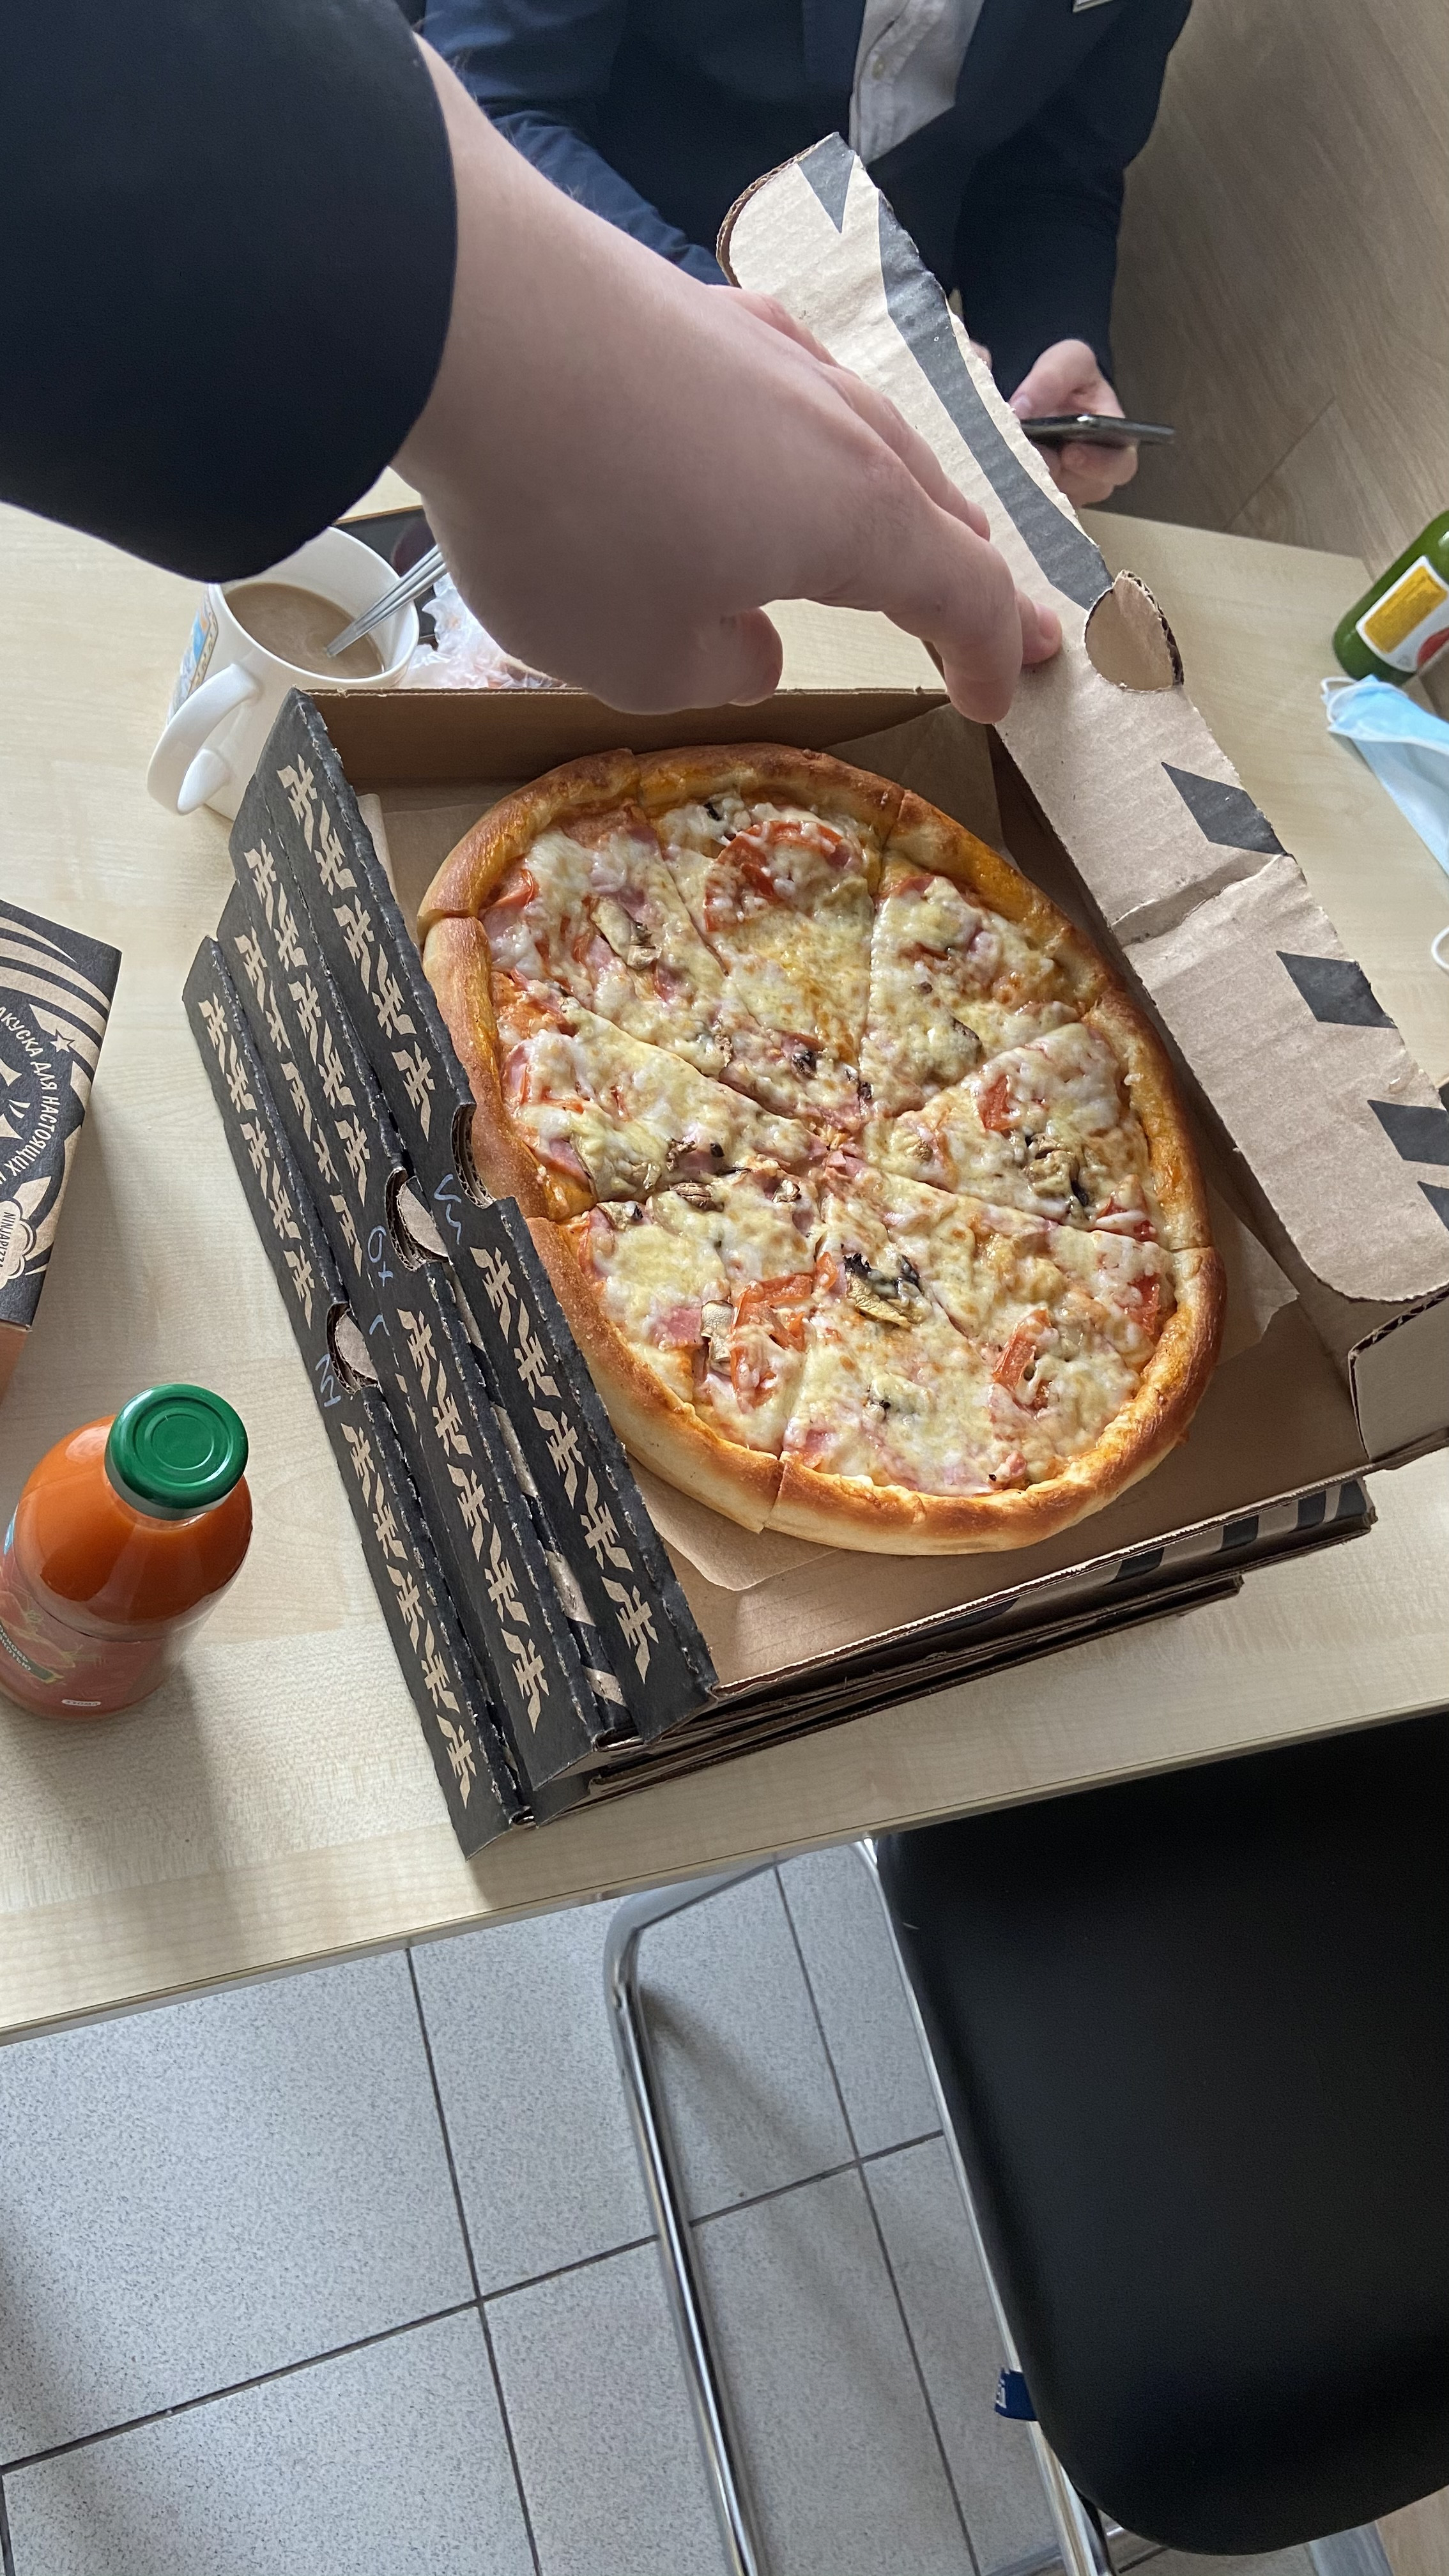 быстрая доставка пиццы в красноярске фото 31